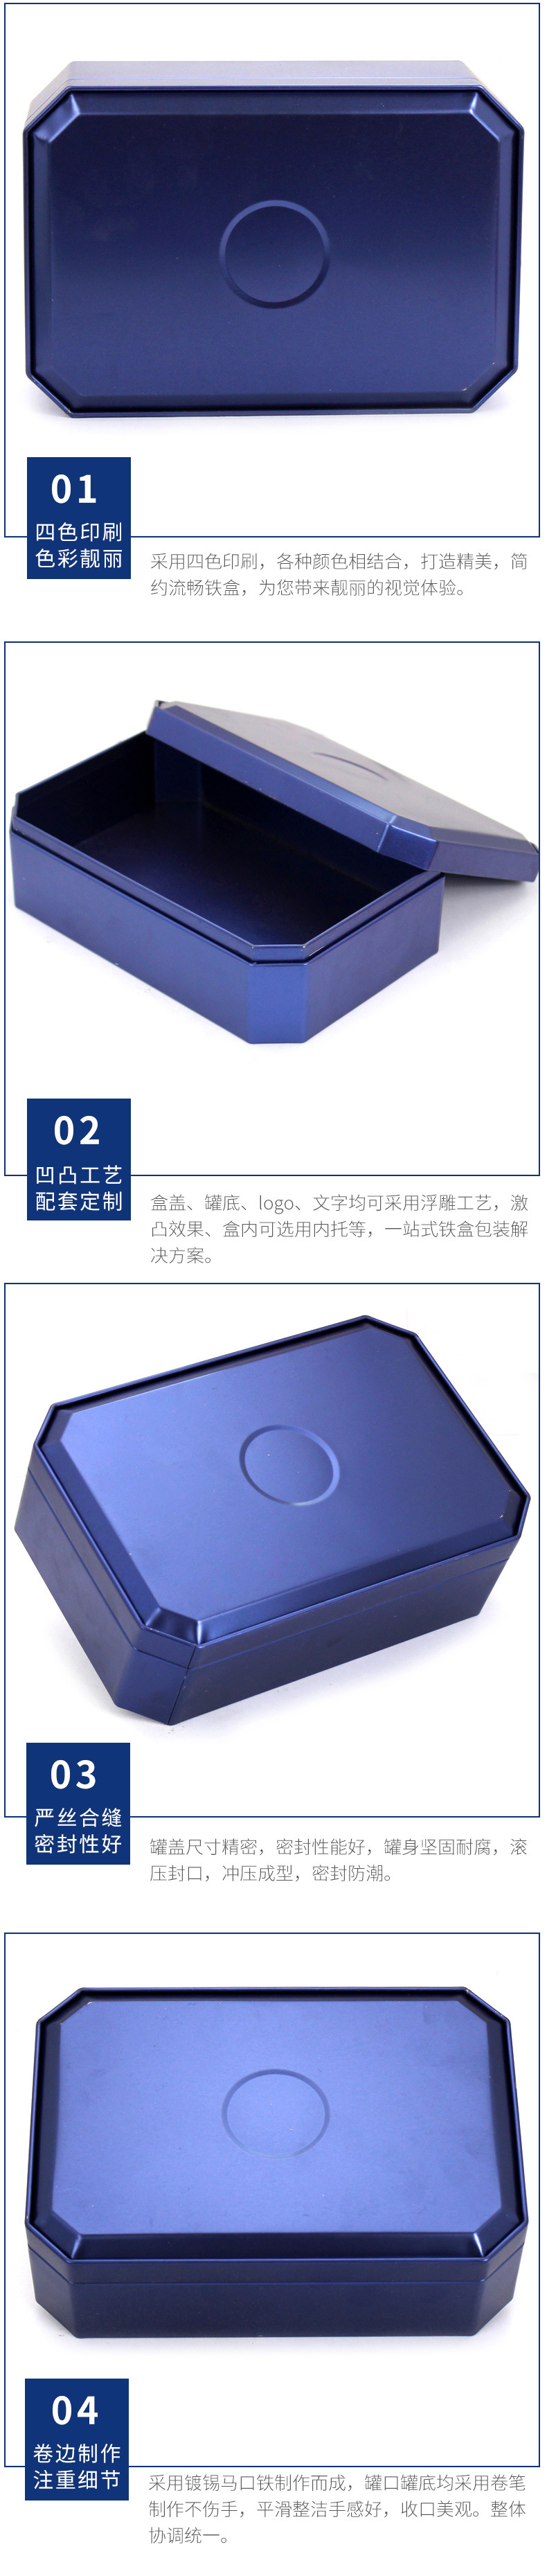 异形铁盒定制 即食燕窝包装盒 铁罐 八角保健品铁盒生产示例图14